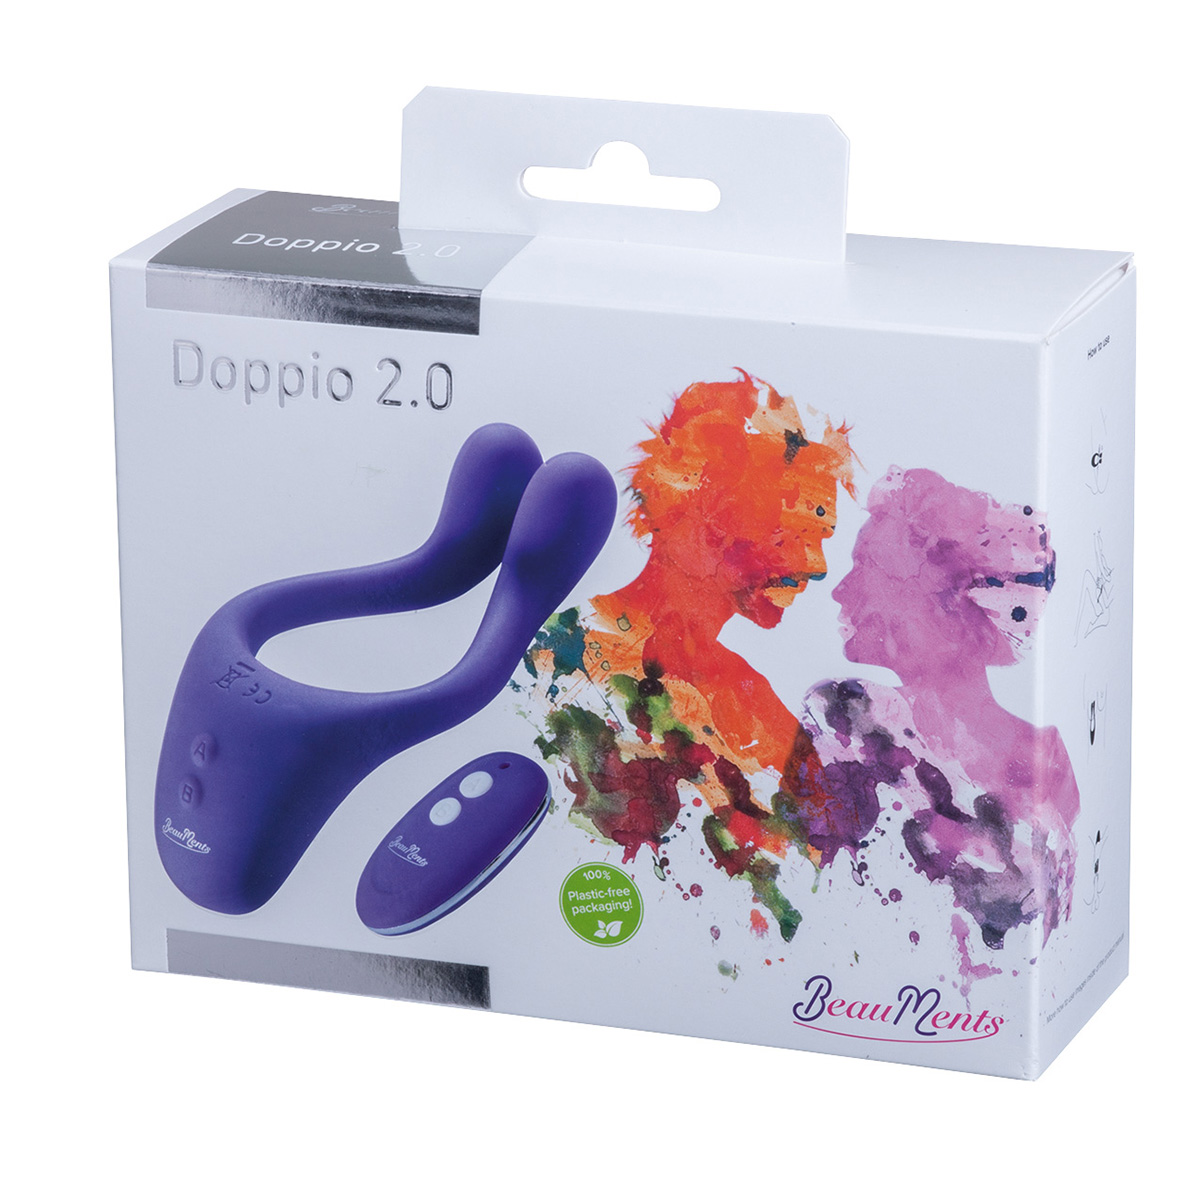 BeauMents-Doppio-2.0-Purple-OPR-3500044-8